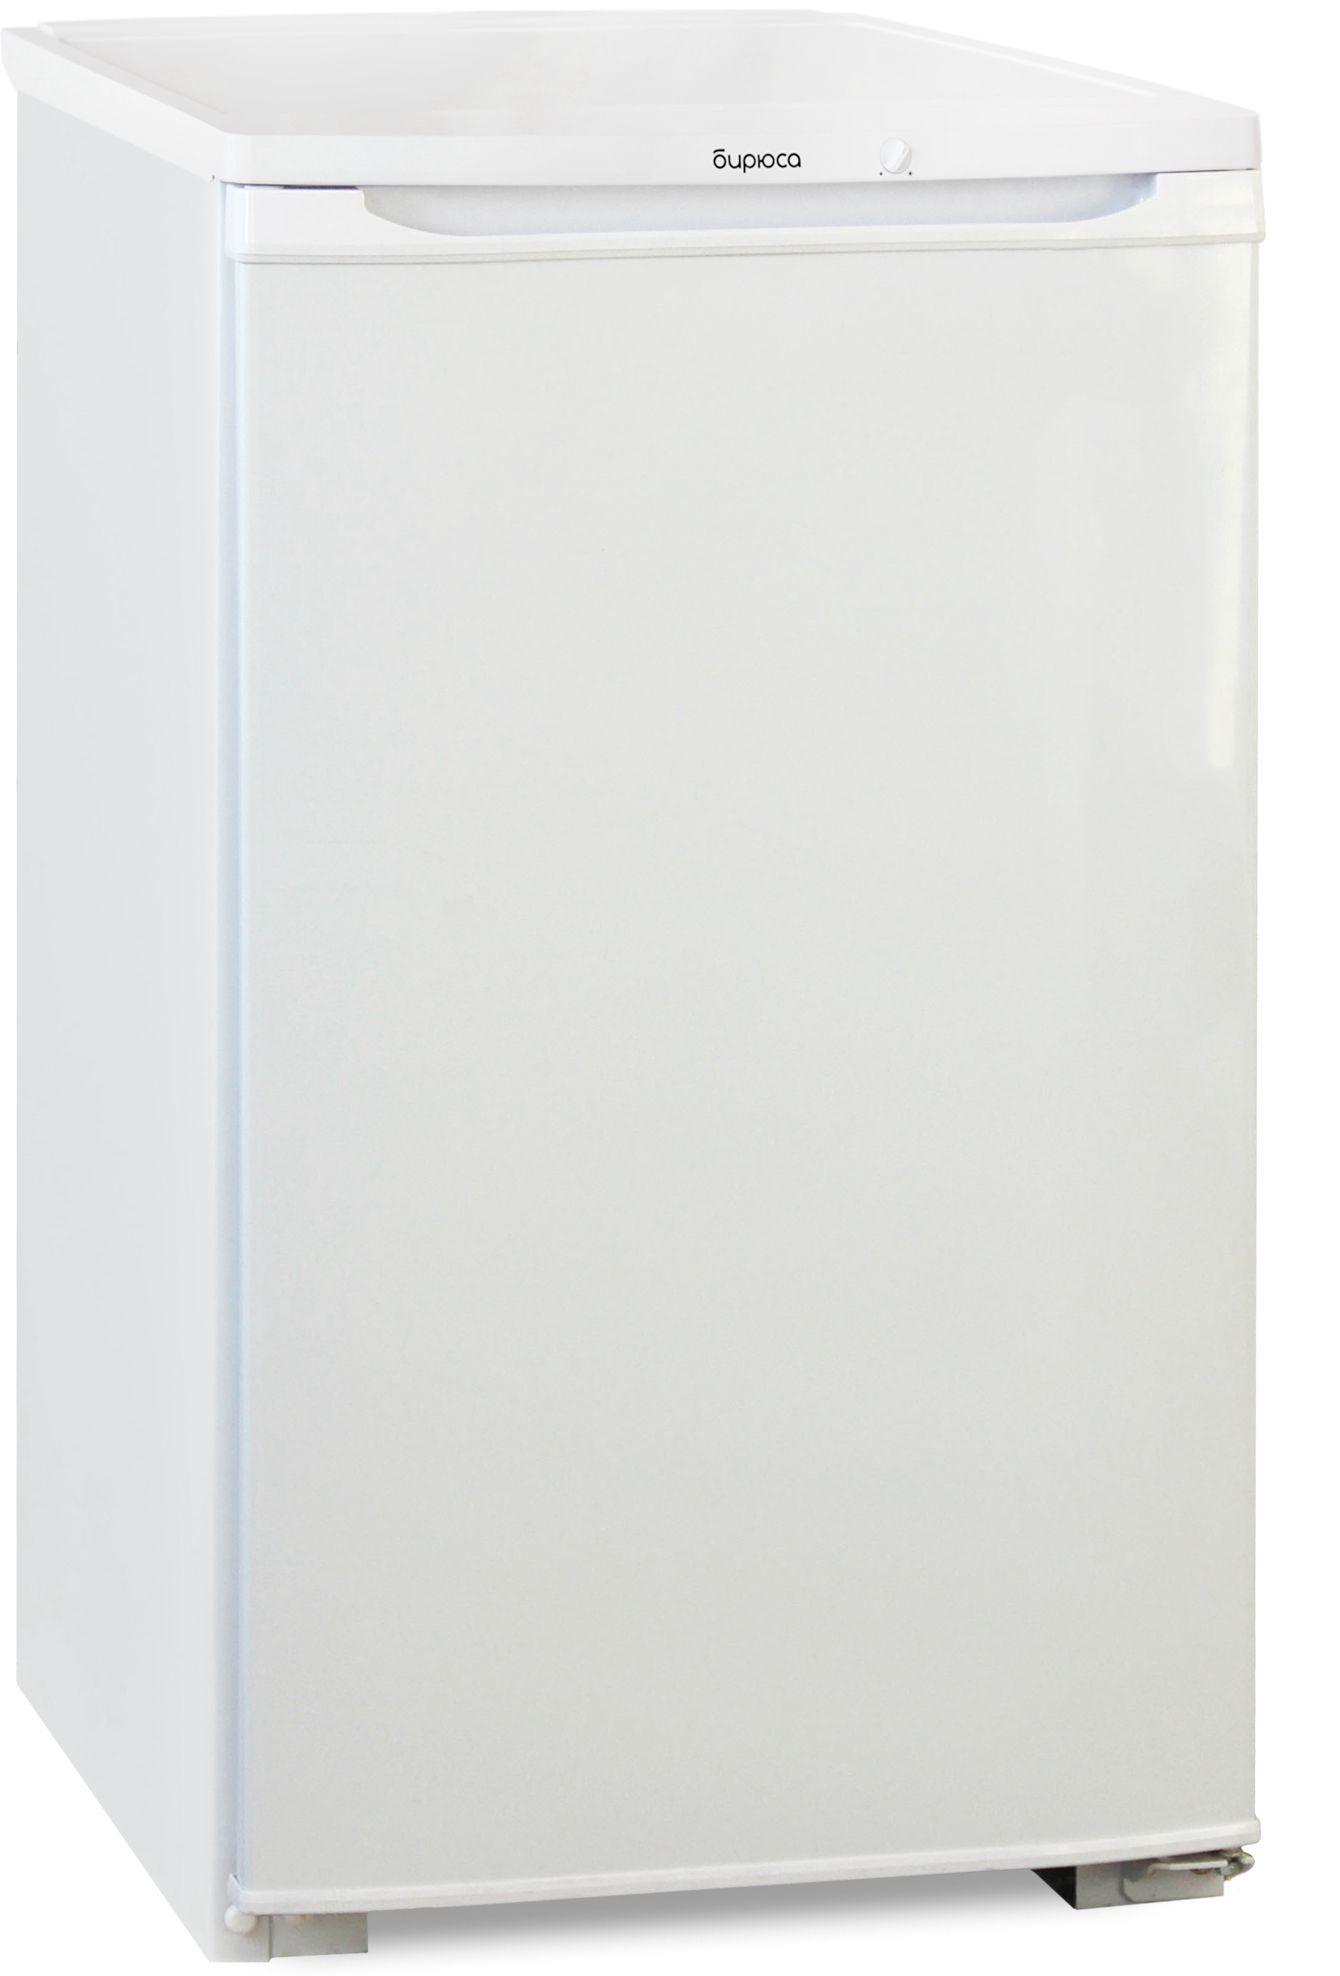 холодильник бирюса 109, купить в Красноярске холодильник бирюса 109,  купить в Красноярске дешево холодильник бирюса 109, купить в Красноярске минимальной цене холодильник бирюса 109